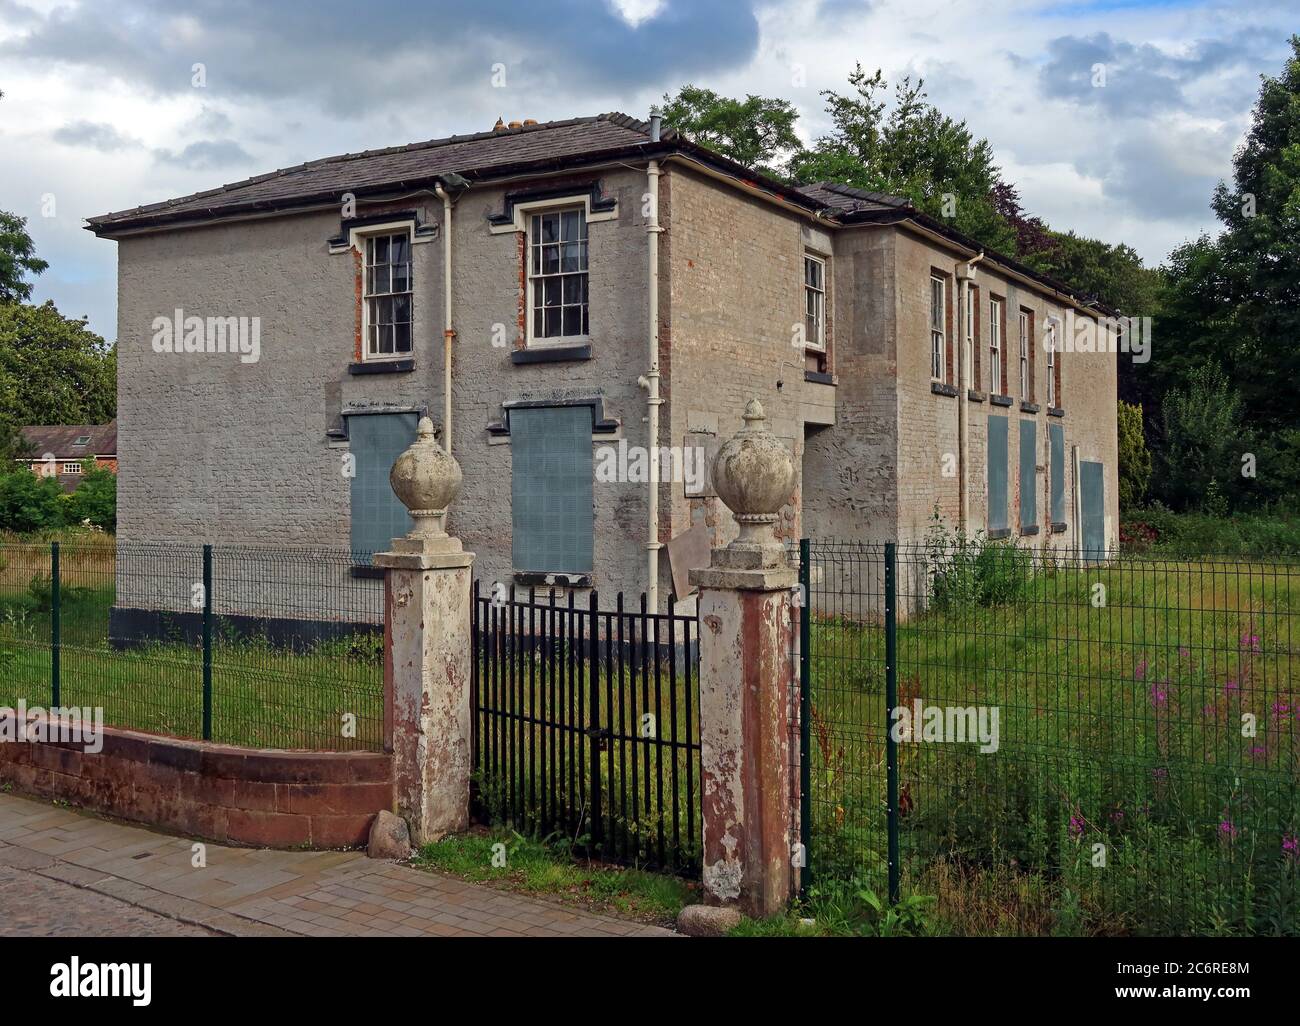 Grappenhall-Augenanlage, Gebäude für 25 Jahre leer gelassen, Pfarrhaus, auf Church Lane, Warrington, Cheshire, England, Großbritannien Stockfoto